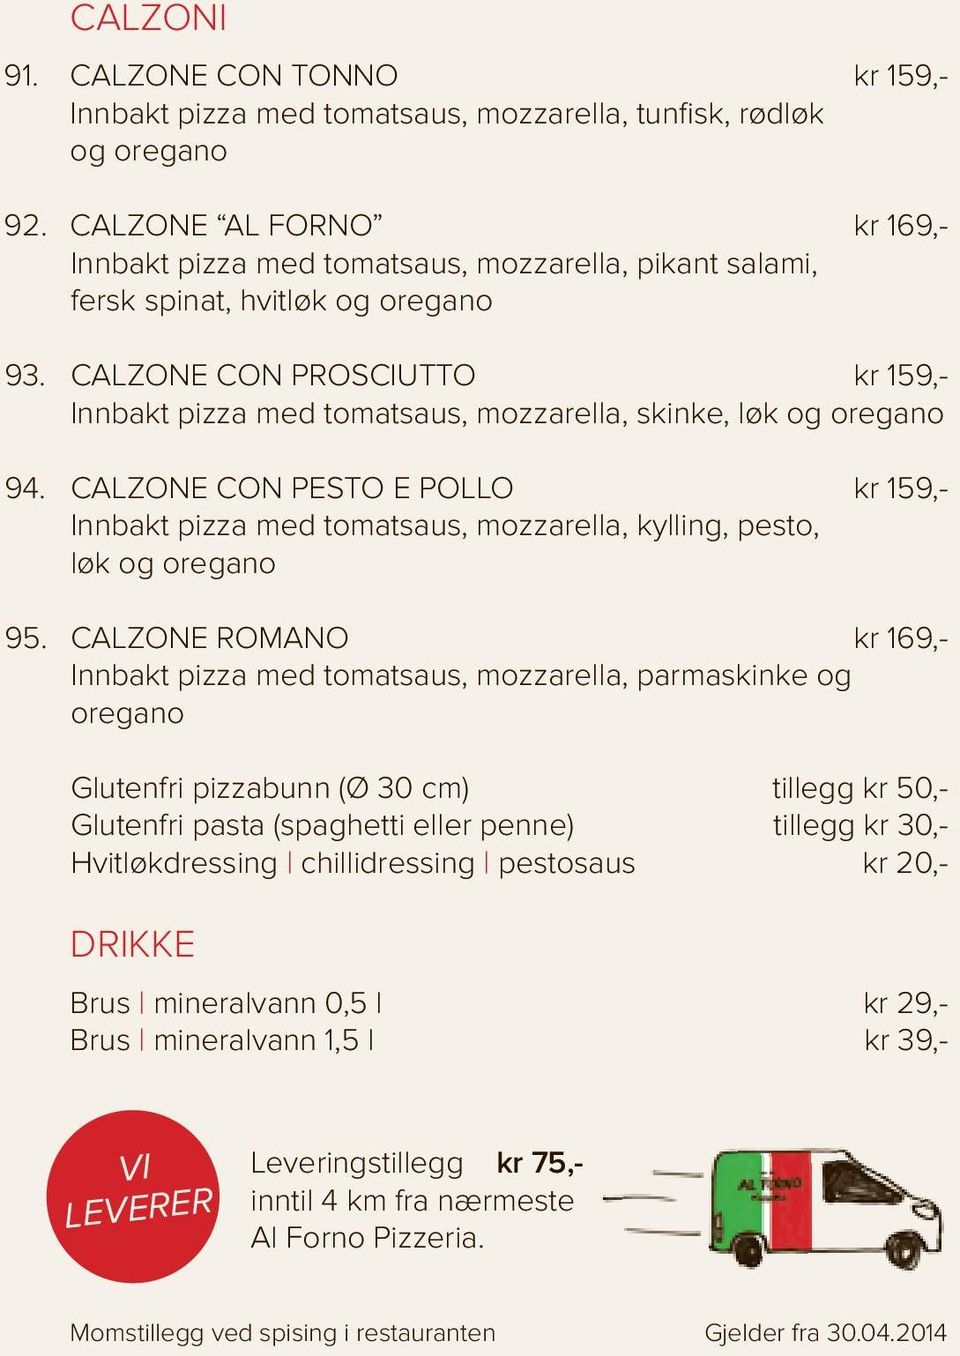 CALZONE CON PROSCIUTTO kr 159,- Innbakt pizza med tomatsaus, mozzarella, skinke, løk og oregano 94.